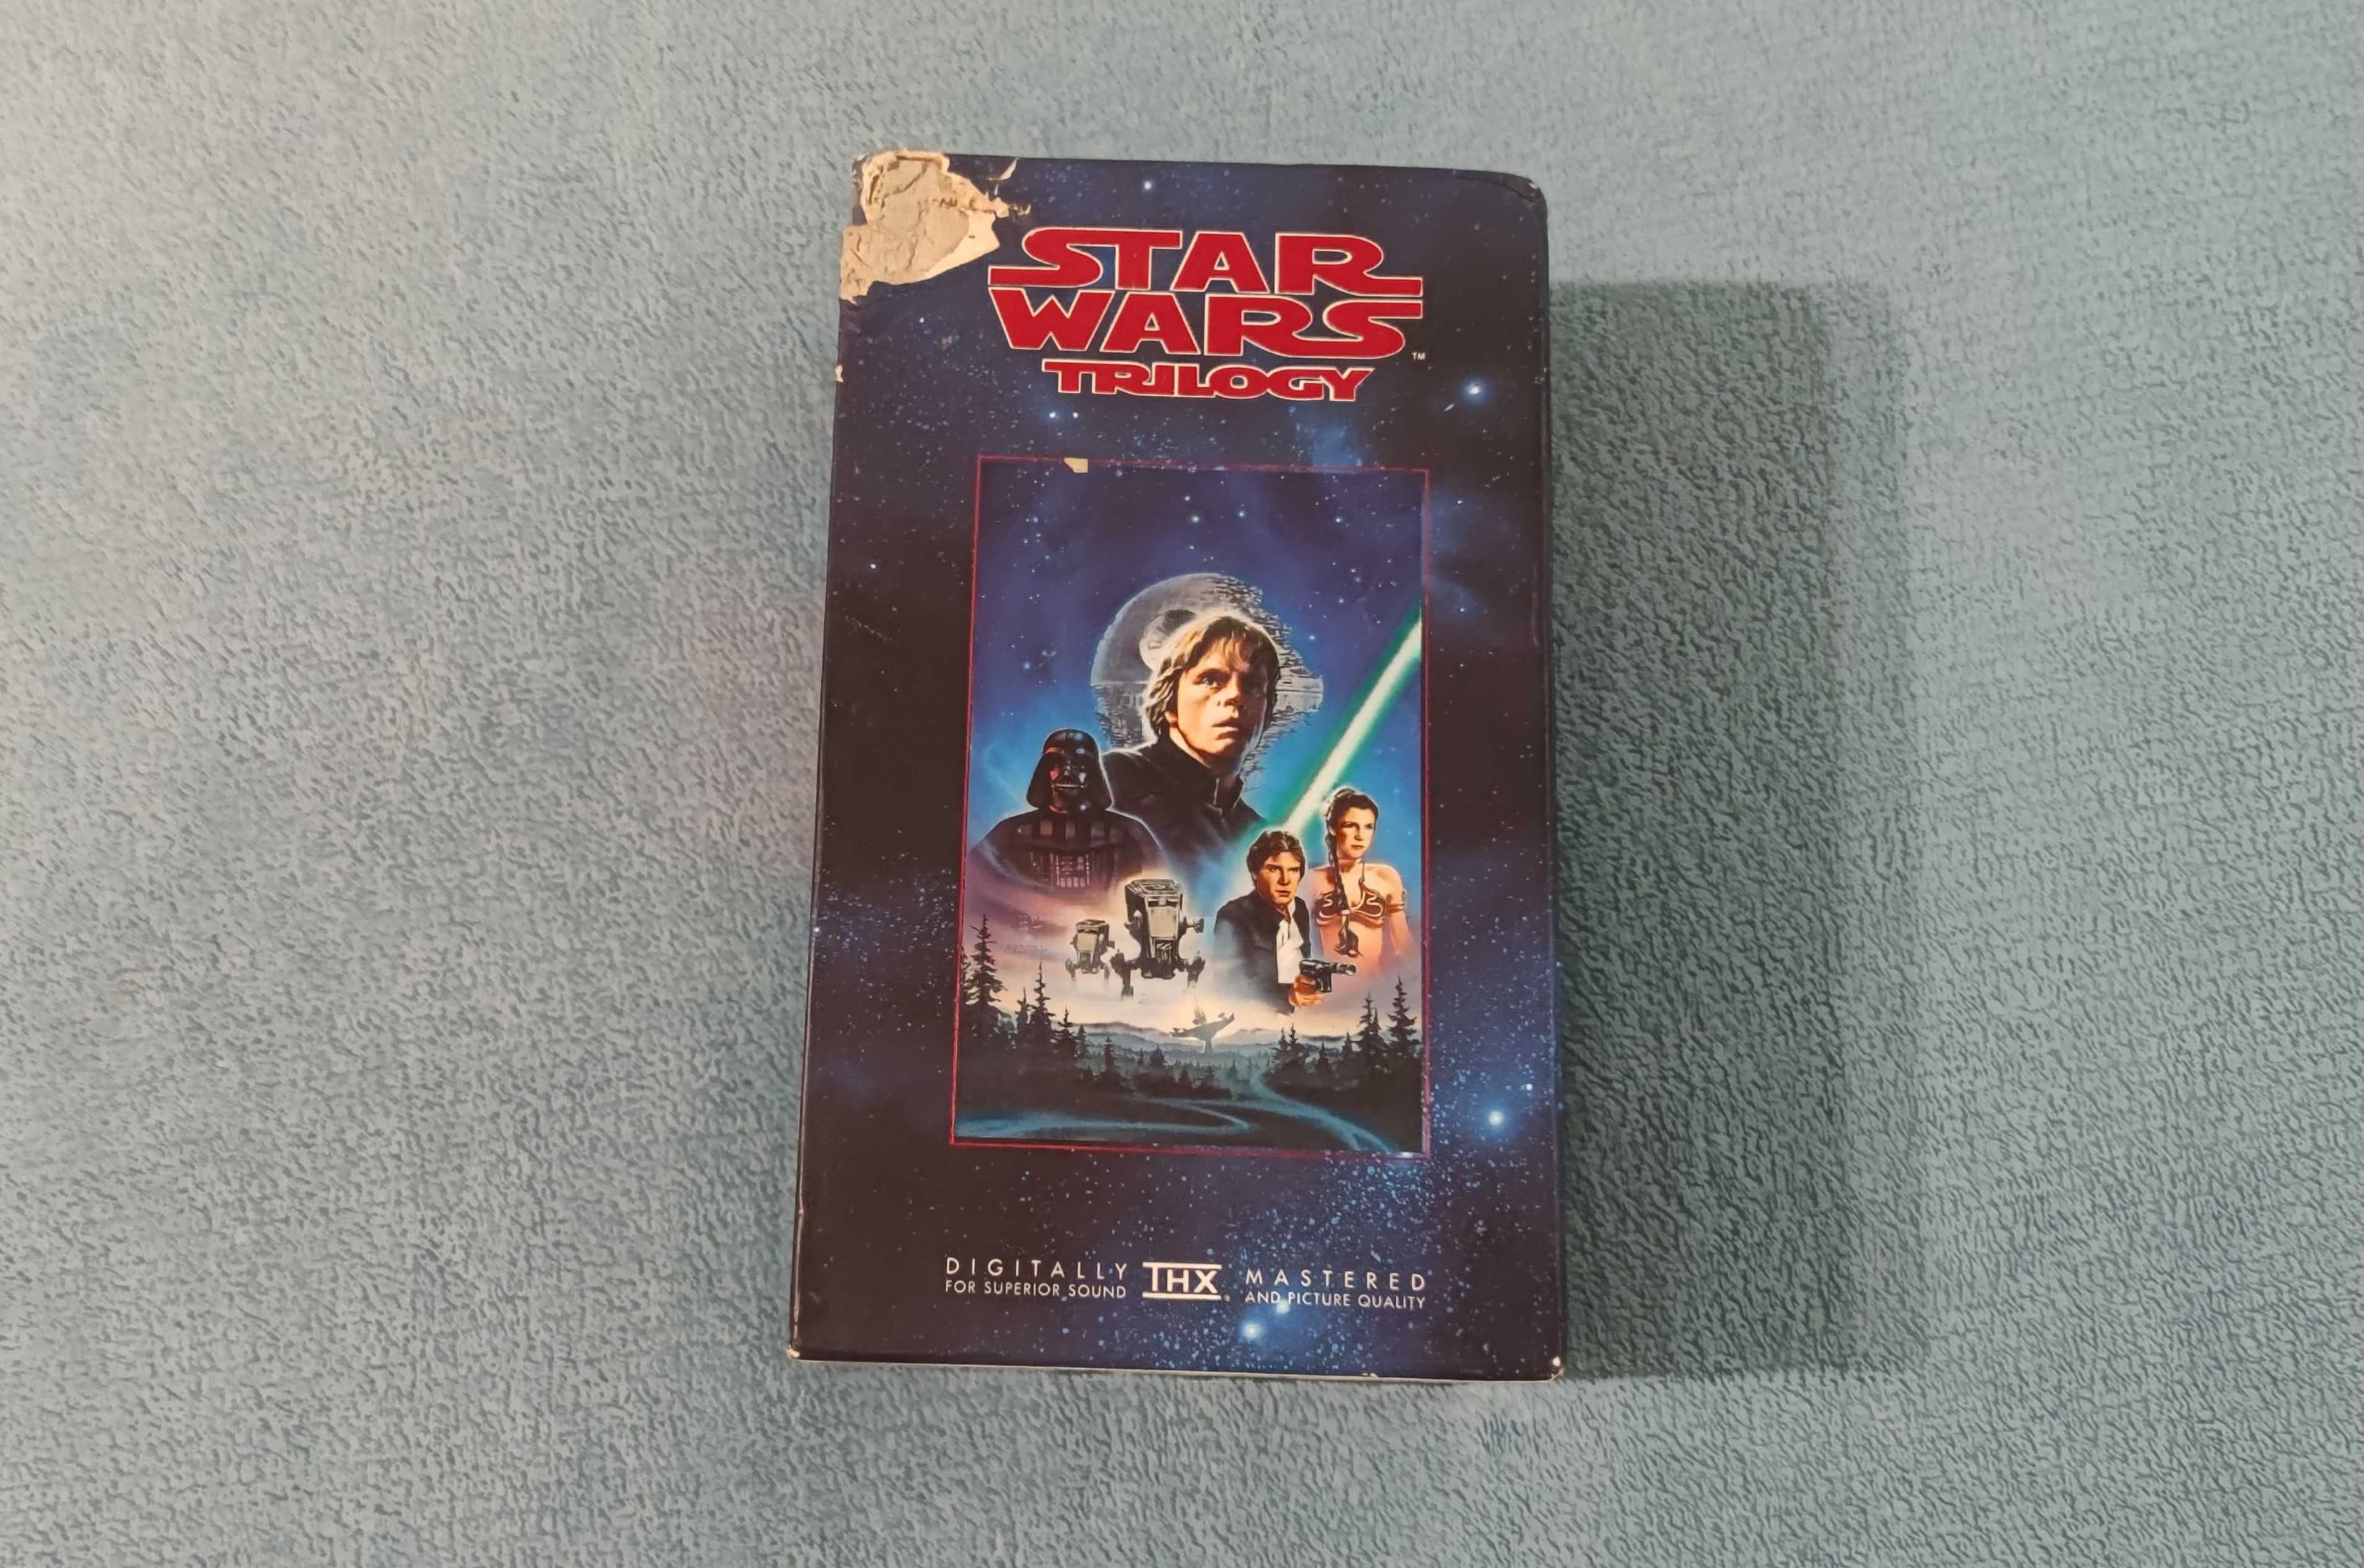 Star Wars Trilogy на VHS, лицензия!